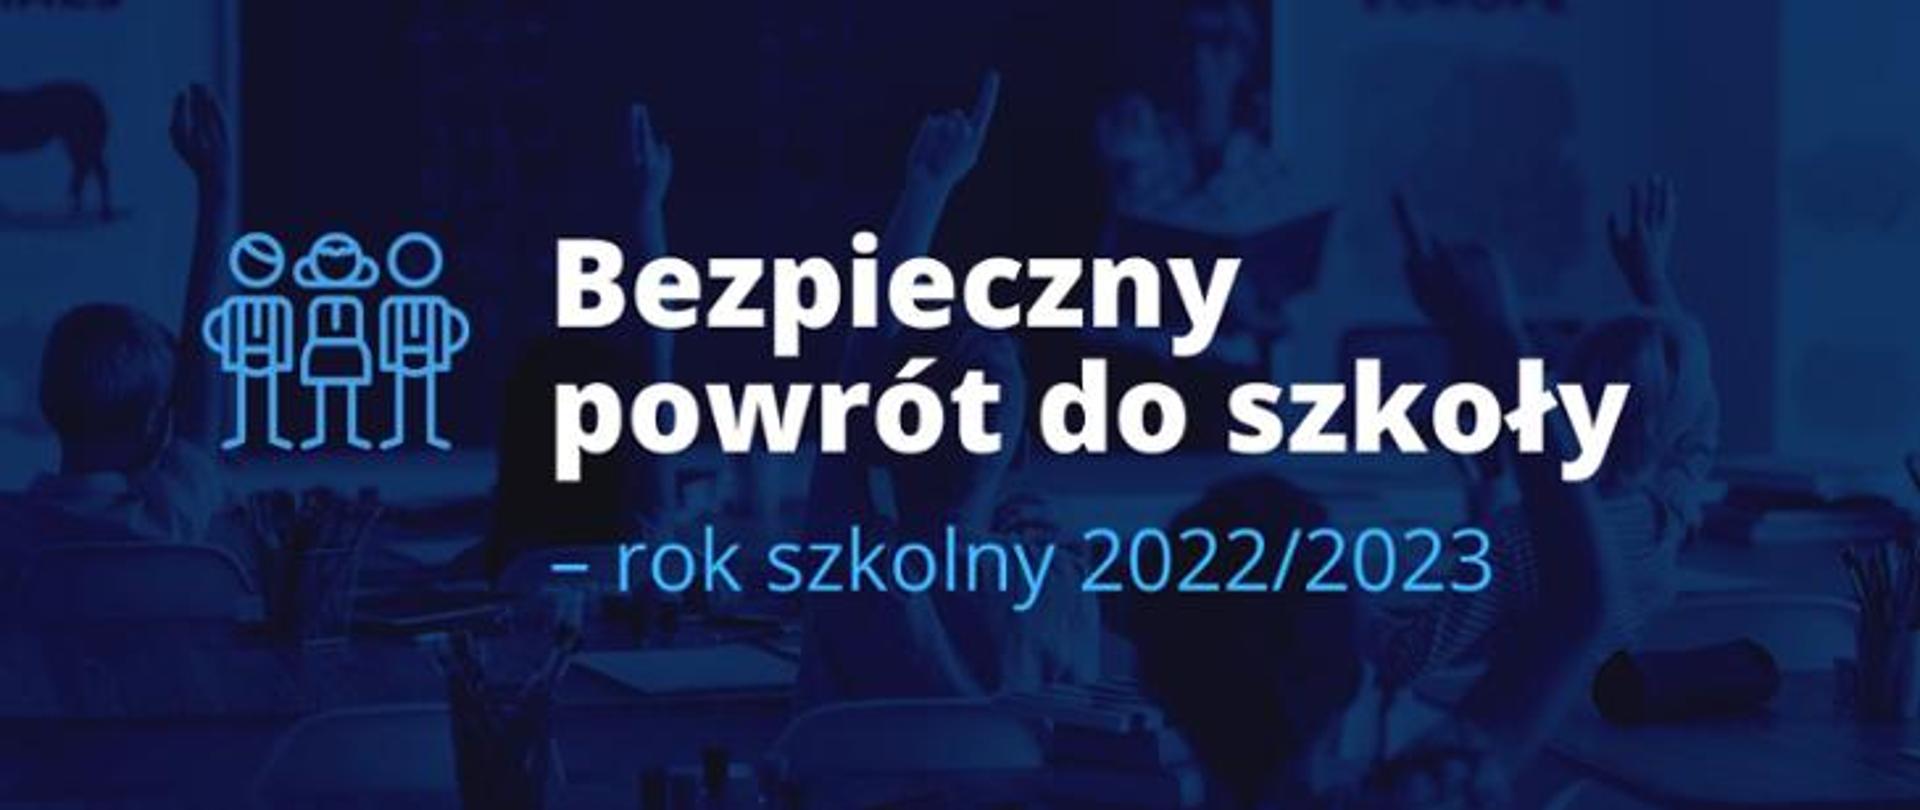 Na niebieskim tle widnieje napis "Bezpieczny powrót do szkoły - rok szkolny 2022/2023